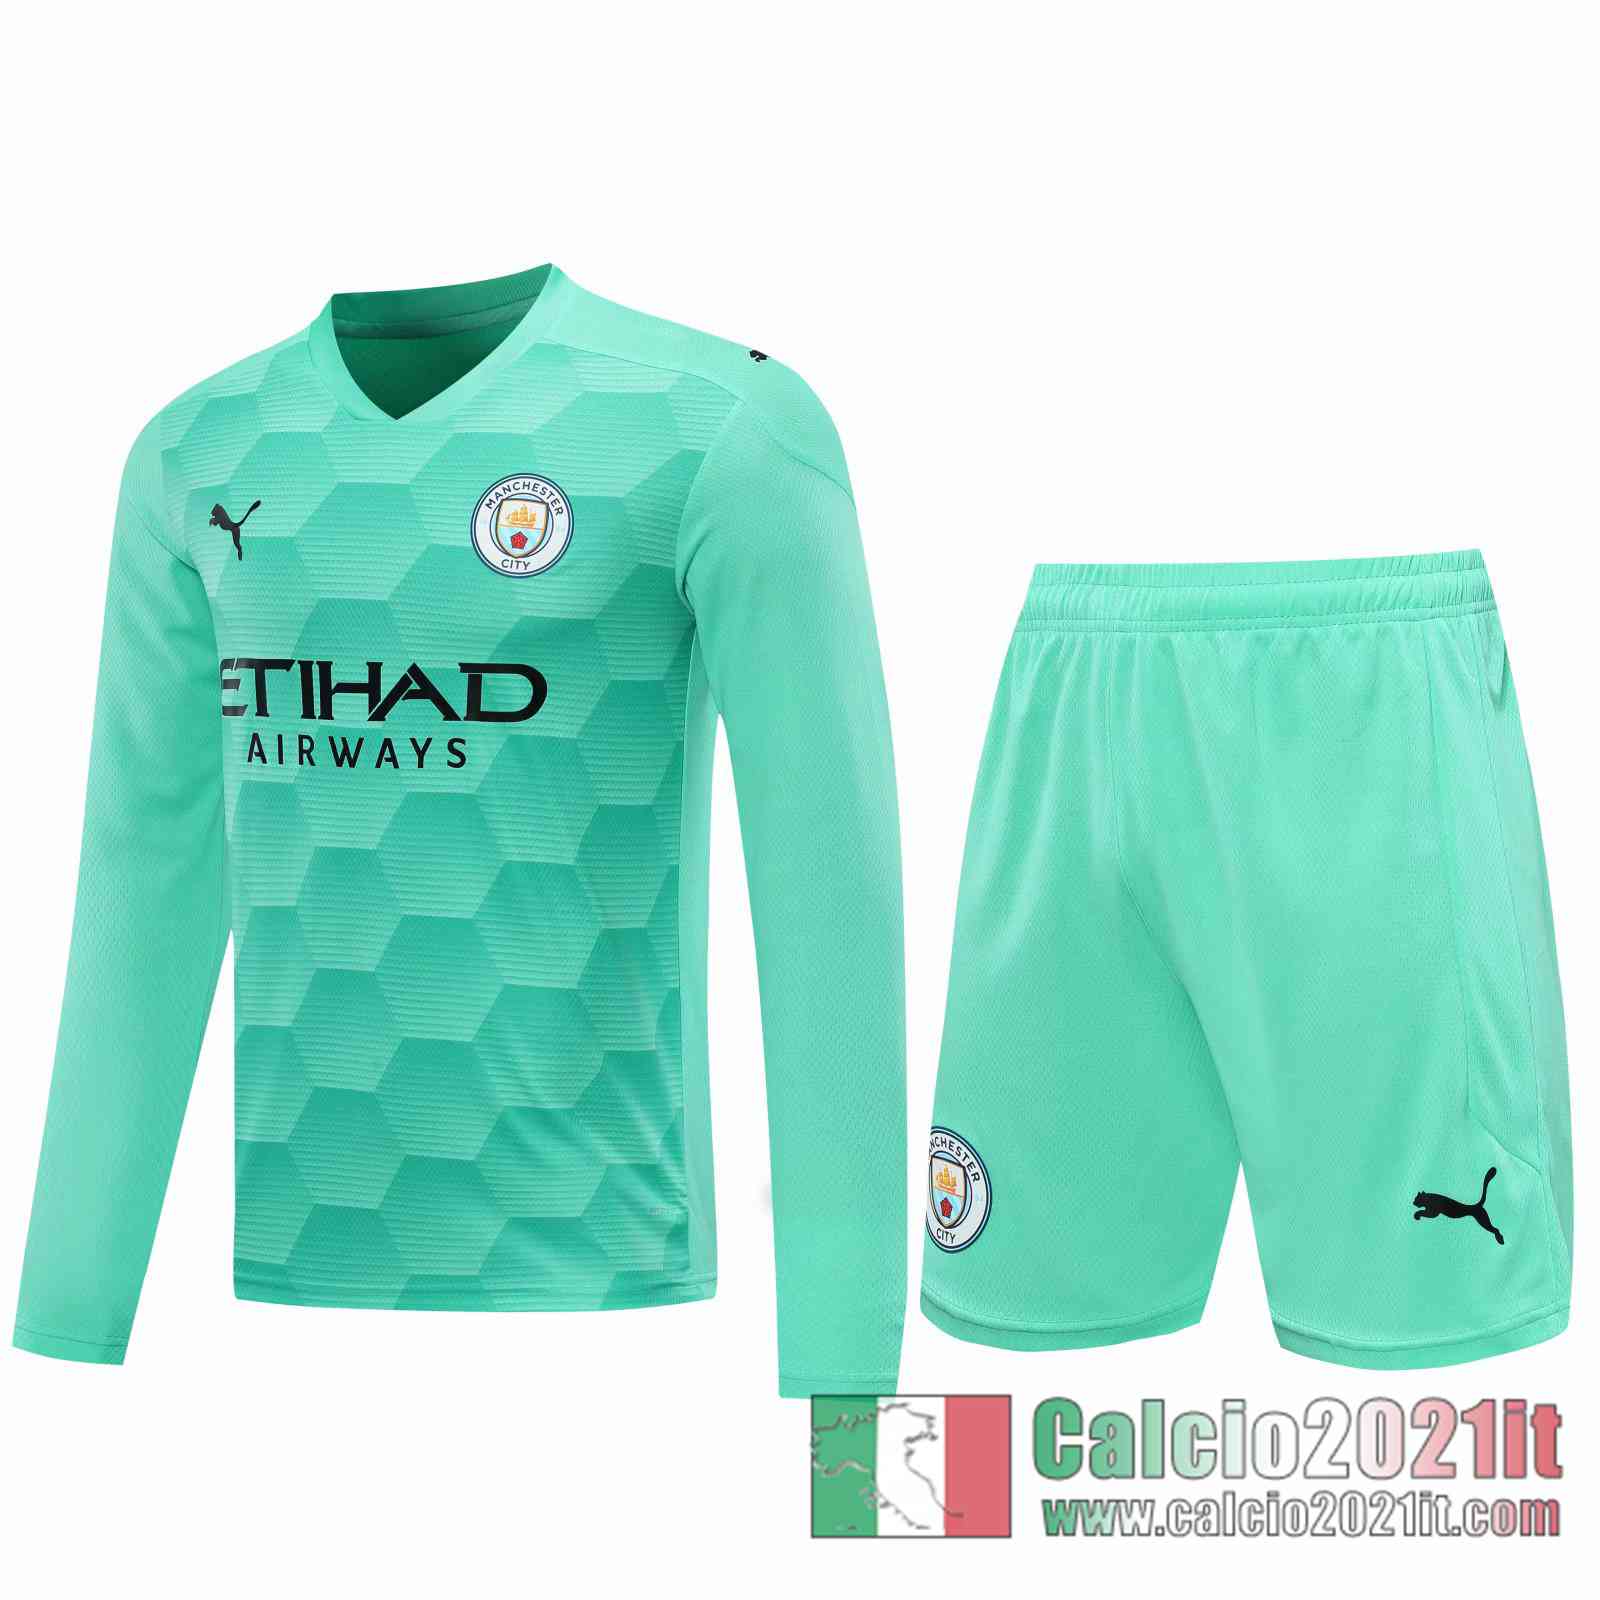 Manchester City Maglie Calcio Portiere Manica Lunga blu verde 2020 2021